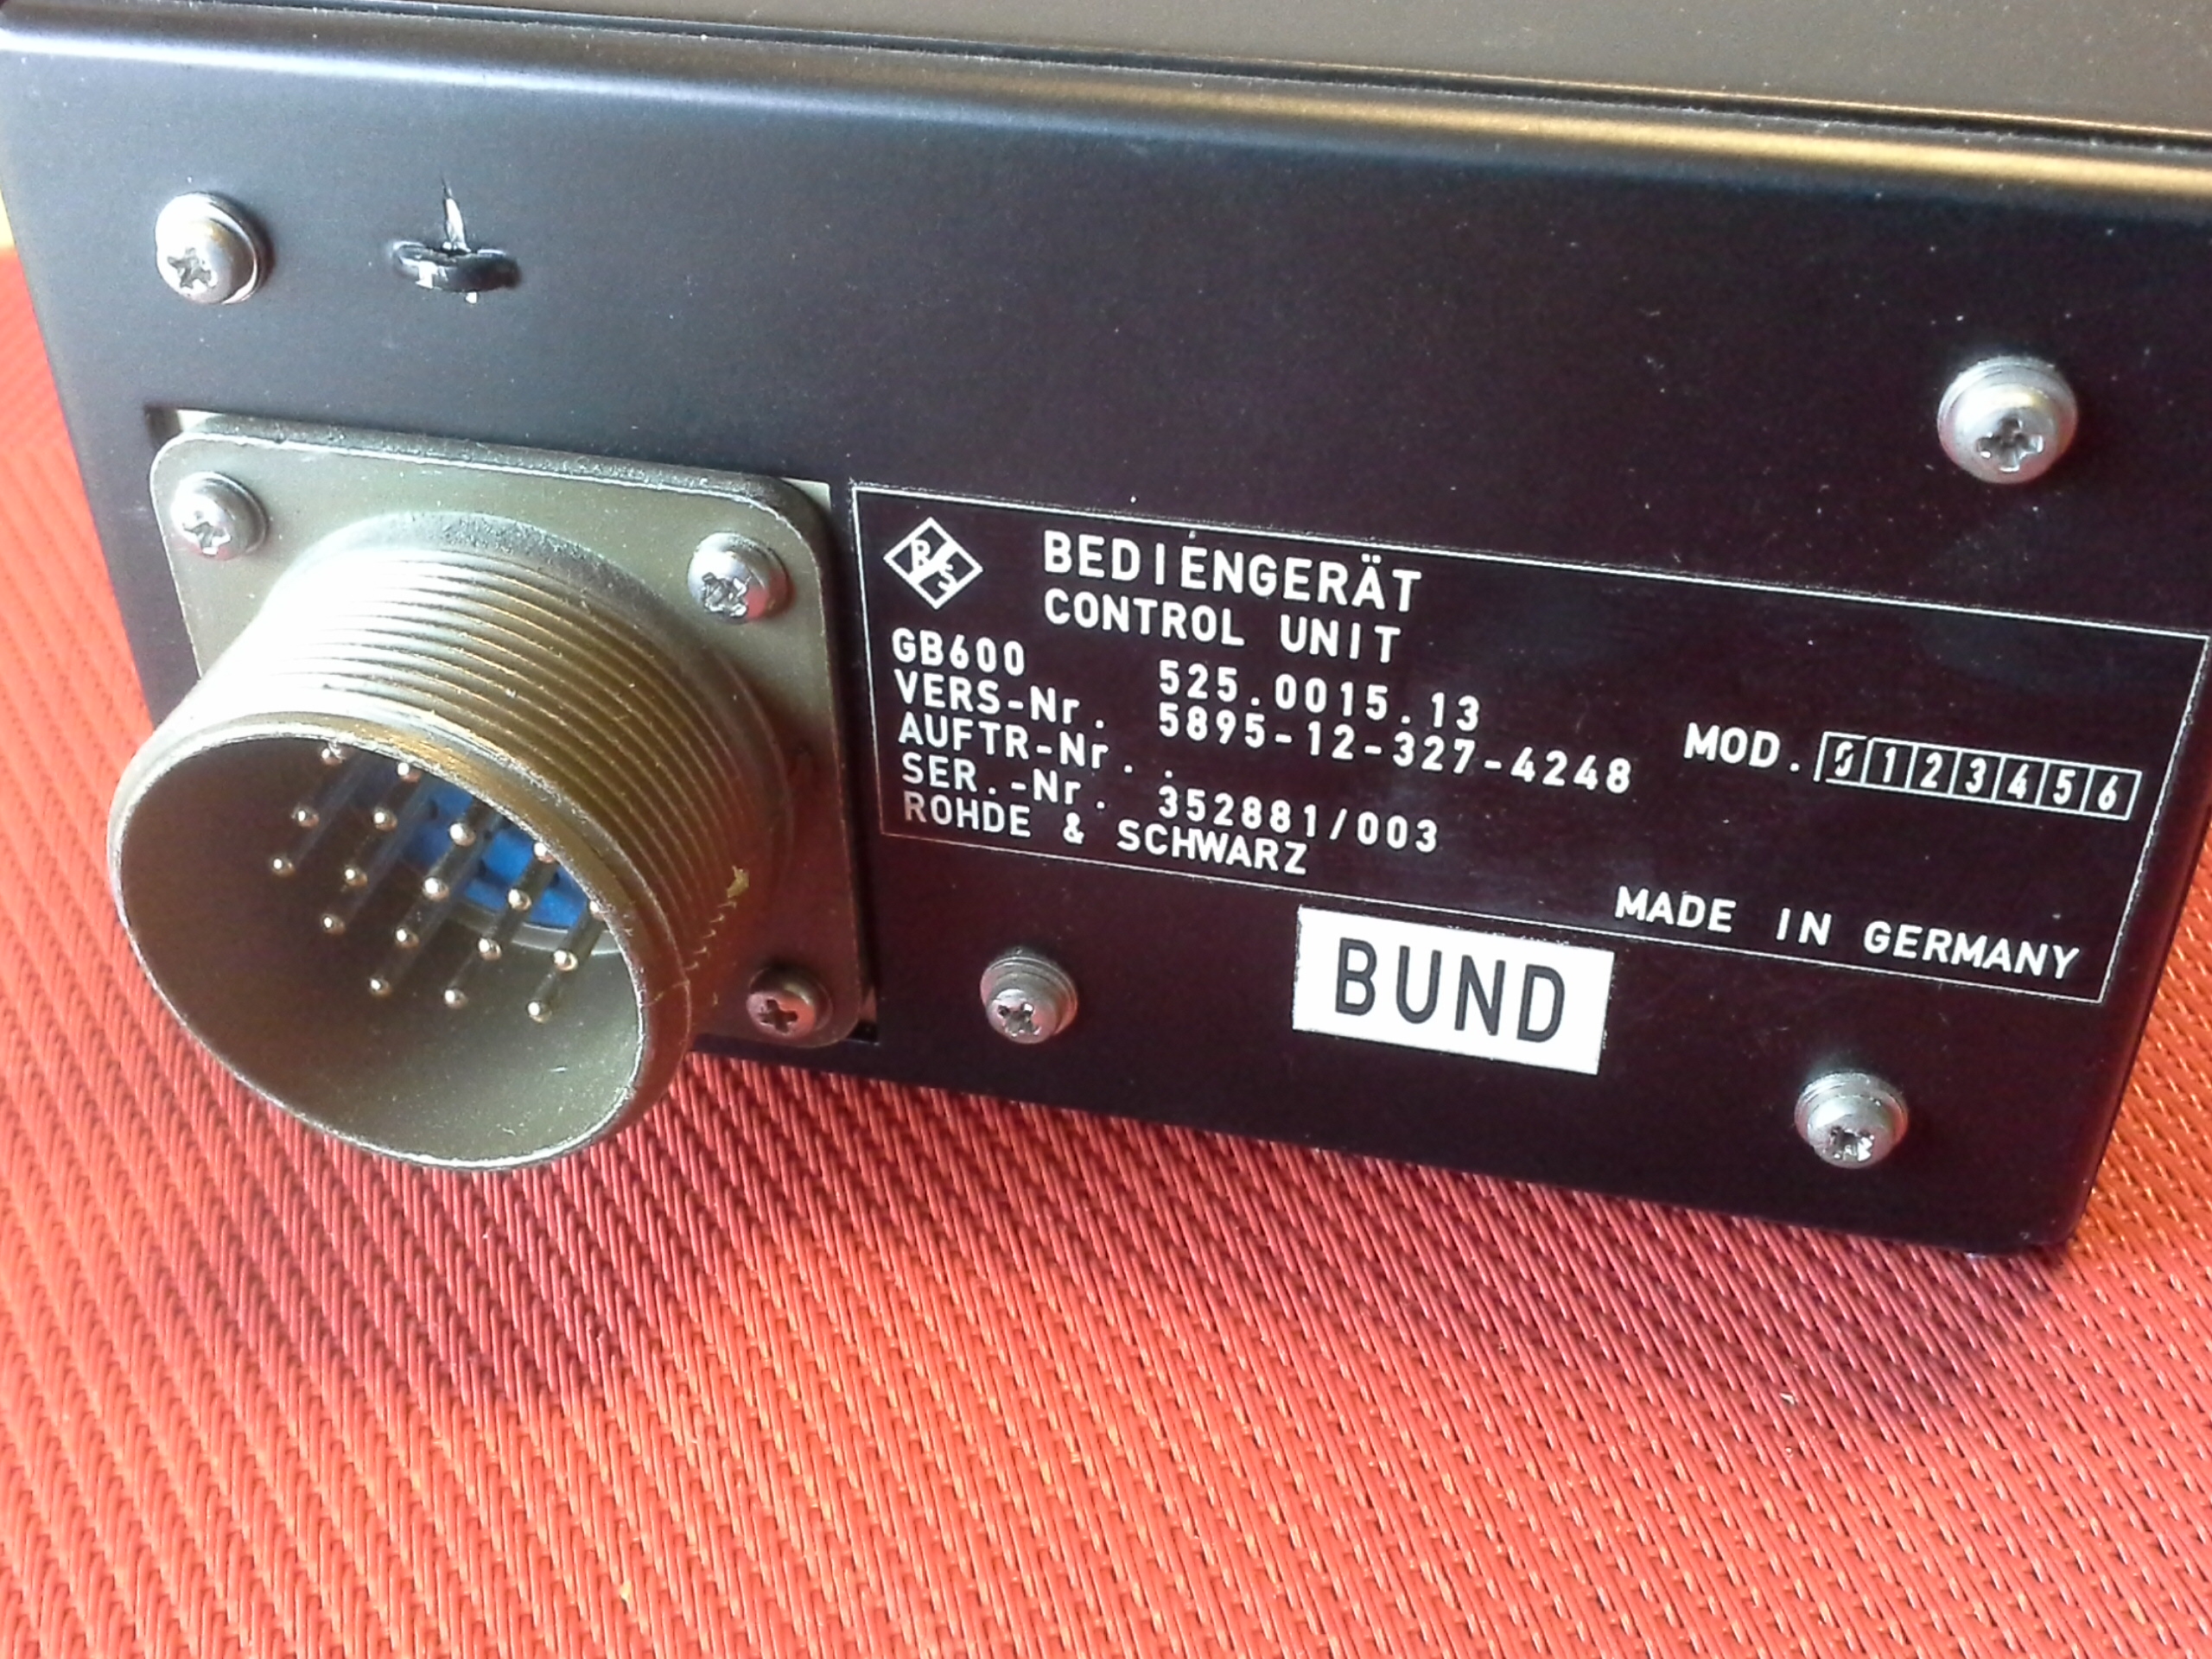 Rohde & Schwarz, Bediengerät , Control Unit, GB 600, von Sender-Empfangsanlage, Rohde & Schwarz, XD 611S, Flugfunk